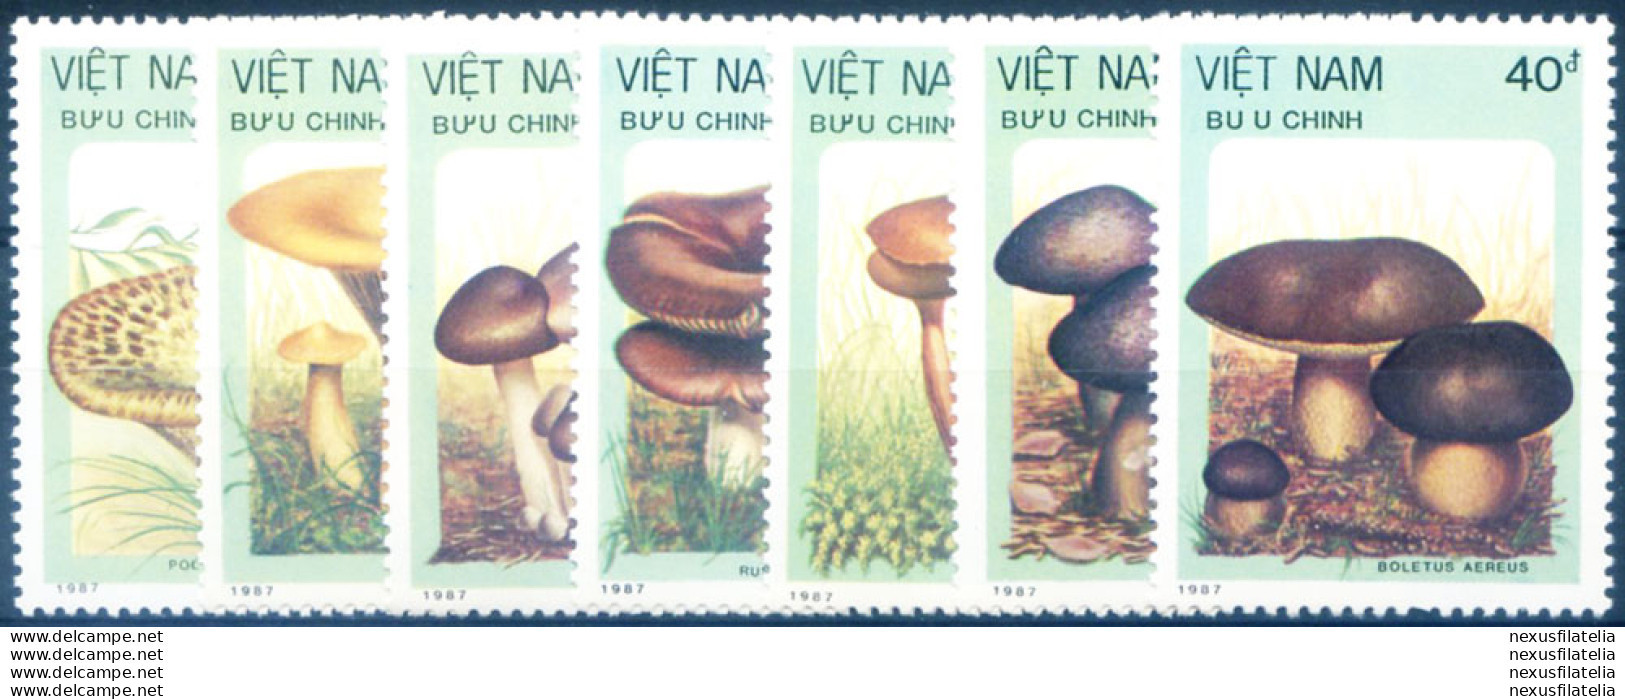 Funghi 1987. - Vietnam